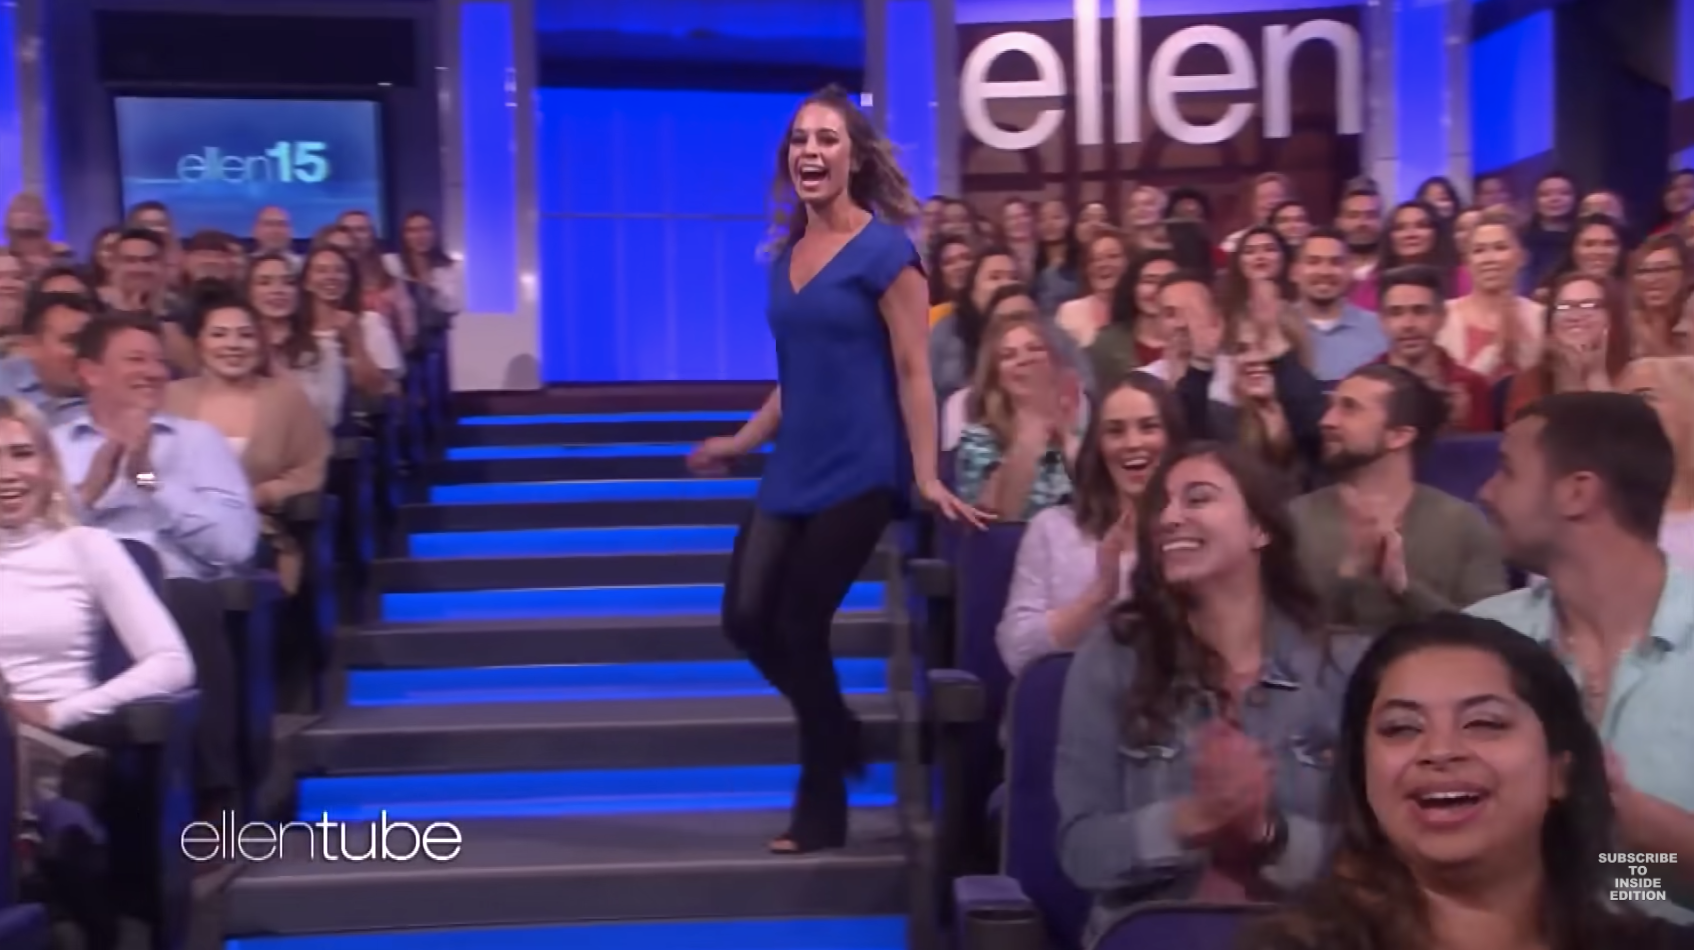 Audience member picked to meet Ellen